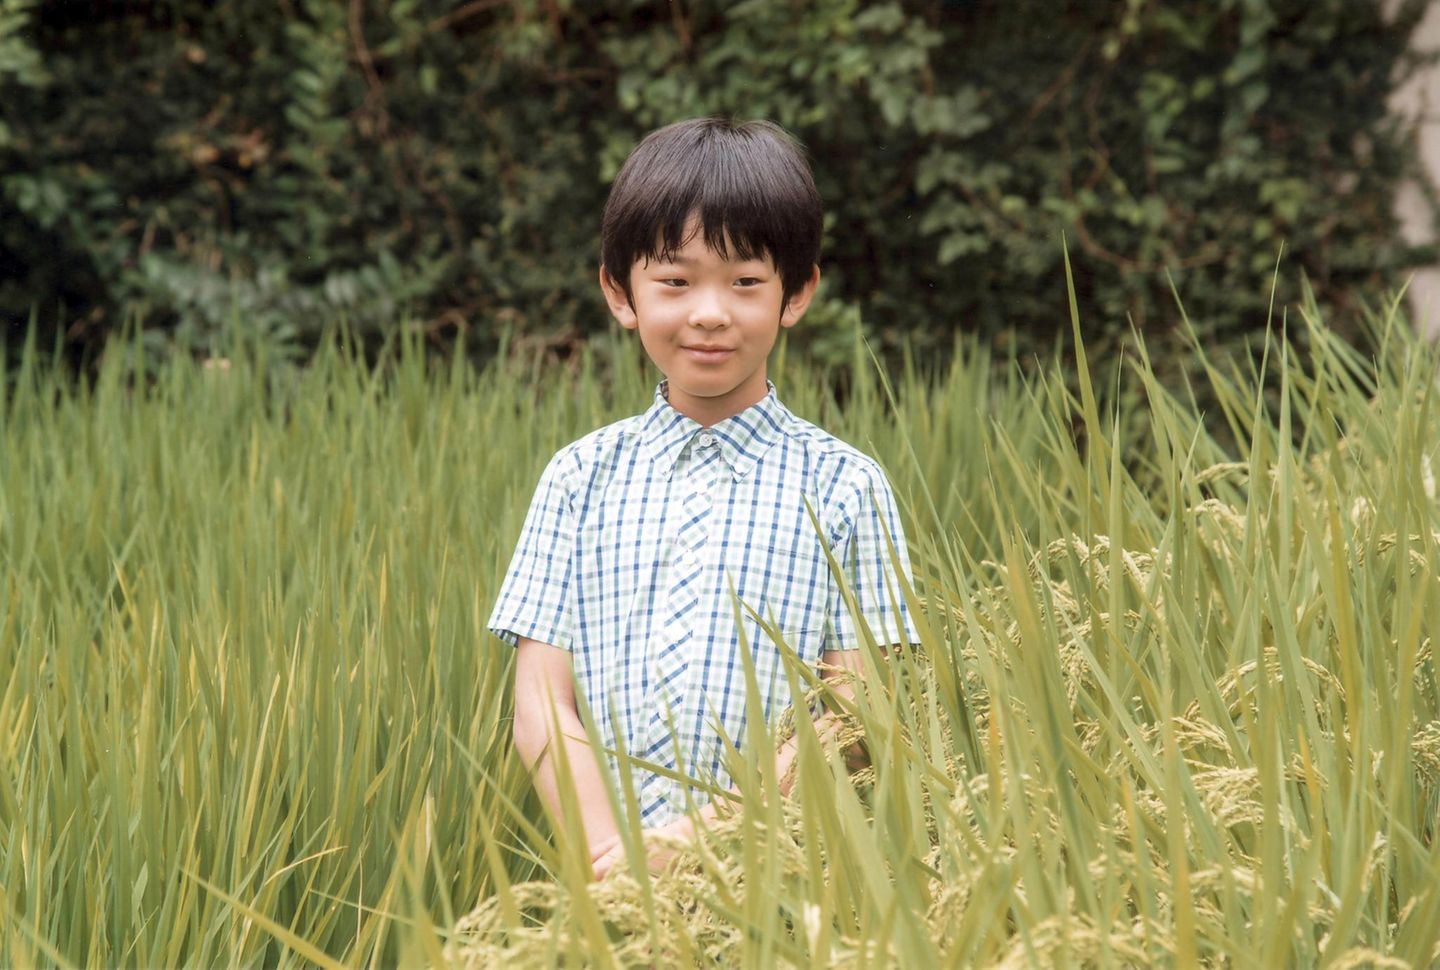 6. September 2016  Prinz Hisahito wird zehn Jahre alt! In einem Reisfeld posiert der einzige Sohn von Prinz Akishino und seiner Frau Kiko im August für seine Geburtstagsfotos.